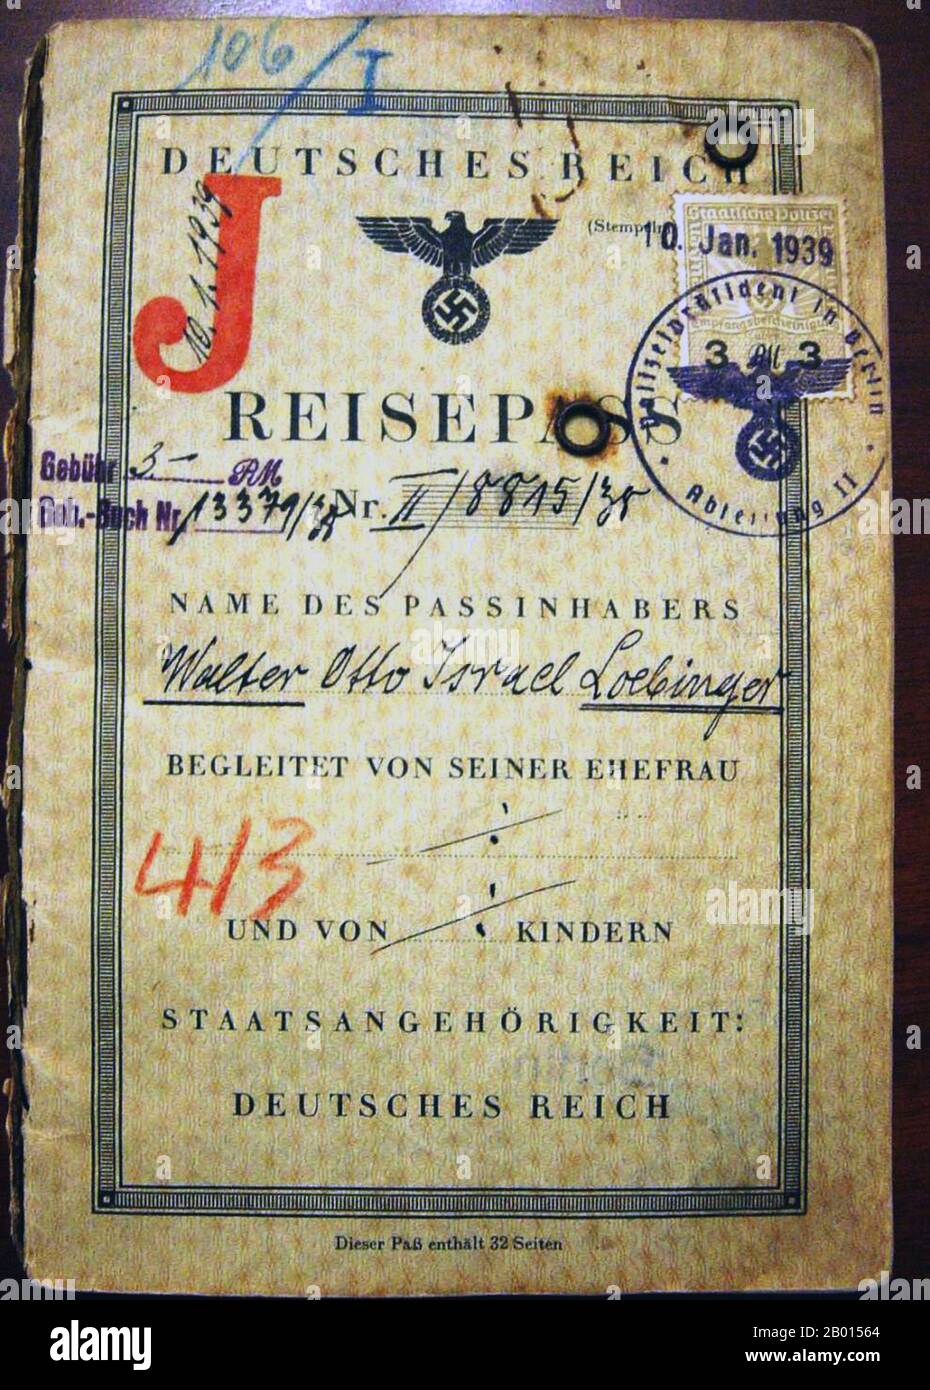 Allemagne/Chine/Israël: Un troisième Reich Reisepass à Shanghai (1939). Troisième passe de voyage allemand Reich (nazi) émis le 10 janvier 1939 à Walter Otto Israel Loebinger, un juif allemand. Le docuemnt montre que Loebinger a voyagé à Shanghai par mer en passant par Ceylan (Sri Lanka) et Hong Kong. L'histoire a une fin heureuse avec - étonnamment - un timbre d'entrée israélien, en hébreu, sur un document de voyage nazi, daté du 12 novembre 1950, deux ans après la création de l'état d'Israël. Banque D'Images